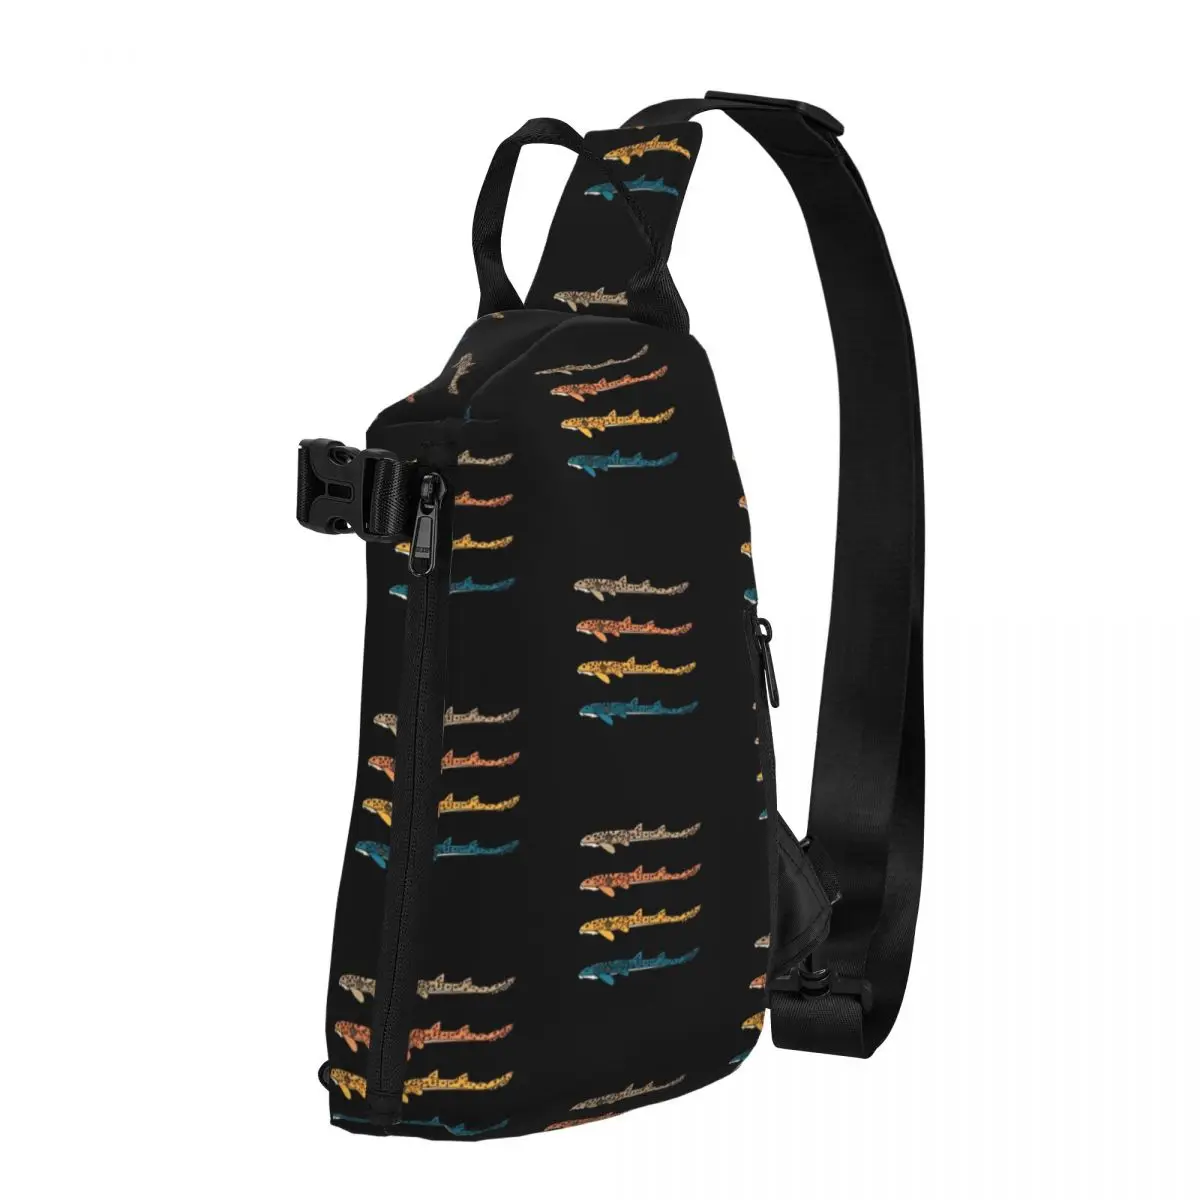 

Нагрудная сумка Epaulette Shark, мужская сумка на плечо с принтом животных, уличная школьная маленькая сумка, сумка-слинг для велоспорта и активного отдыха